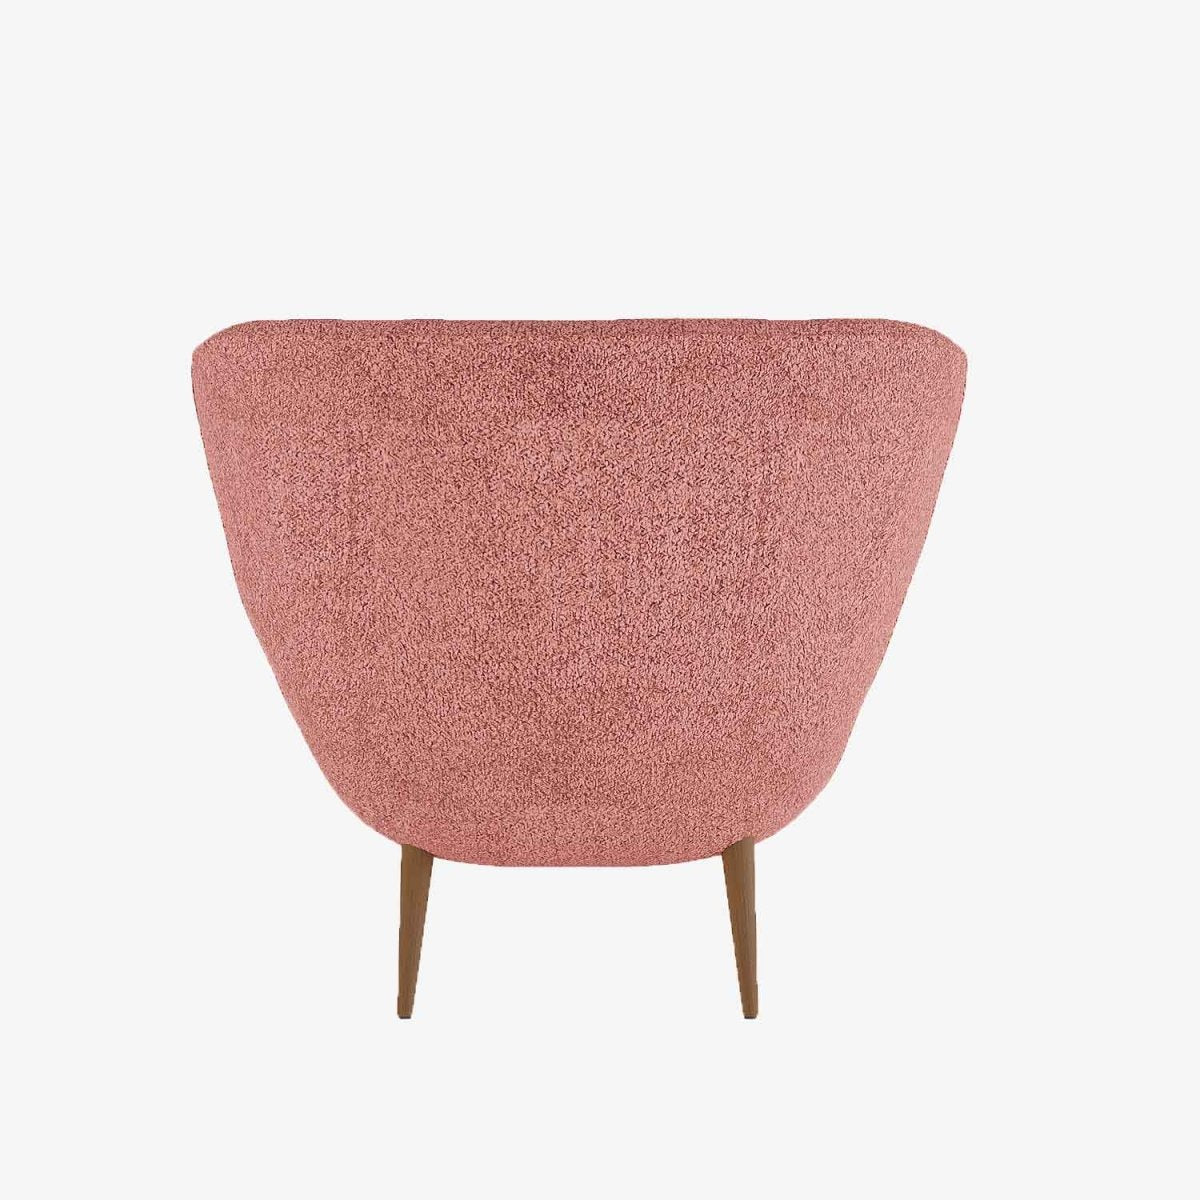 Fauteuil crapaud style vintage en tissu bouclette rose et bois - Potiron Paris, la satisfaciton des assises design confortables et pas chères